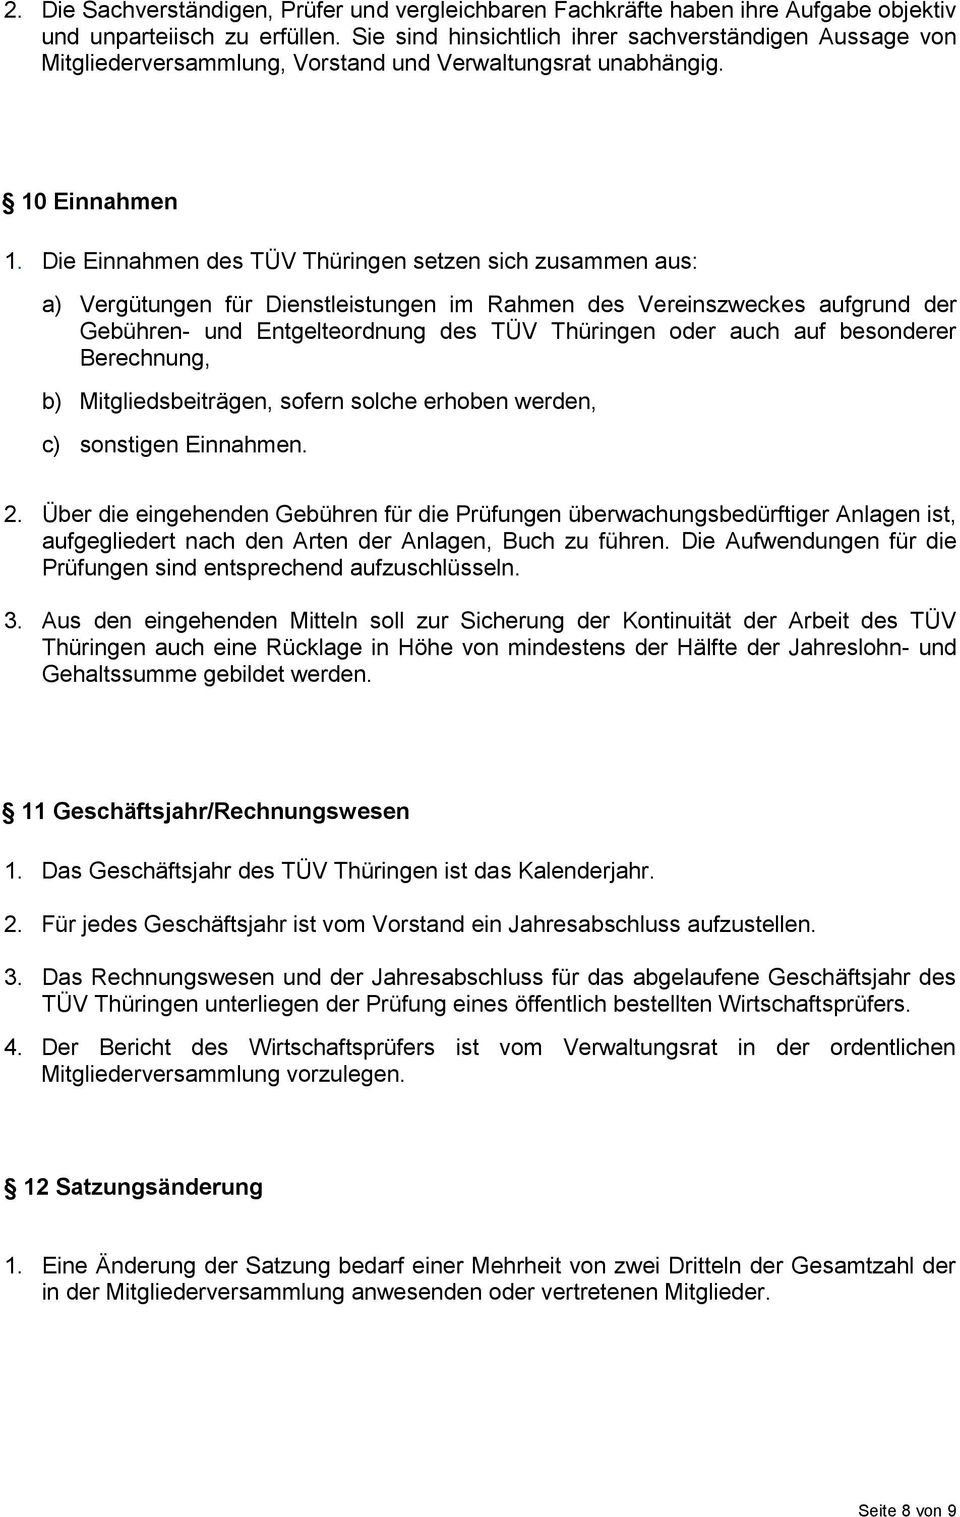 Die Einnahmen des TÜV Thüringen setzen sich zusammen aus: a) Vergütungen für Dienstleistungen im Rahmen des Vereinszweckes aufgrund der Gebühren- und Entgelteordnung des TÜV Thüringen oder auch auf